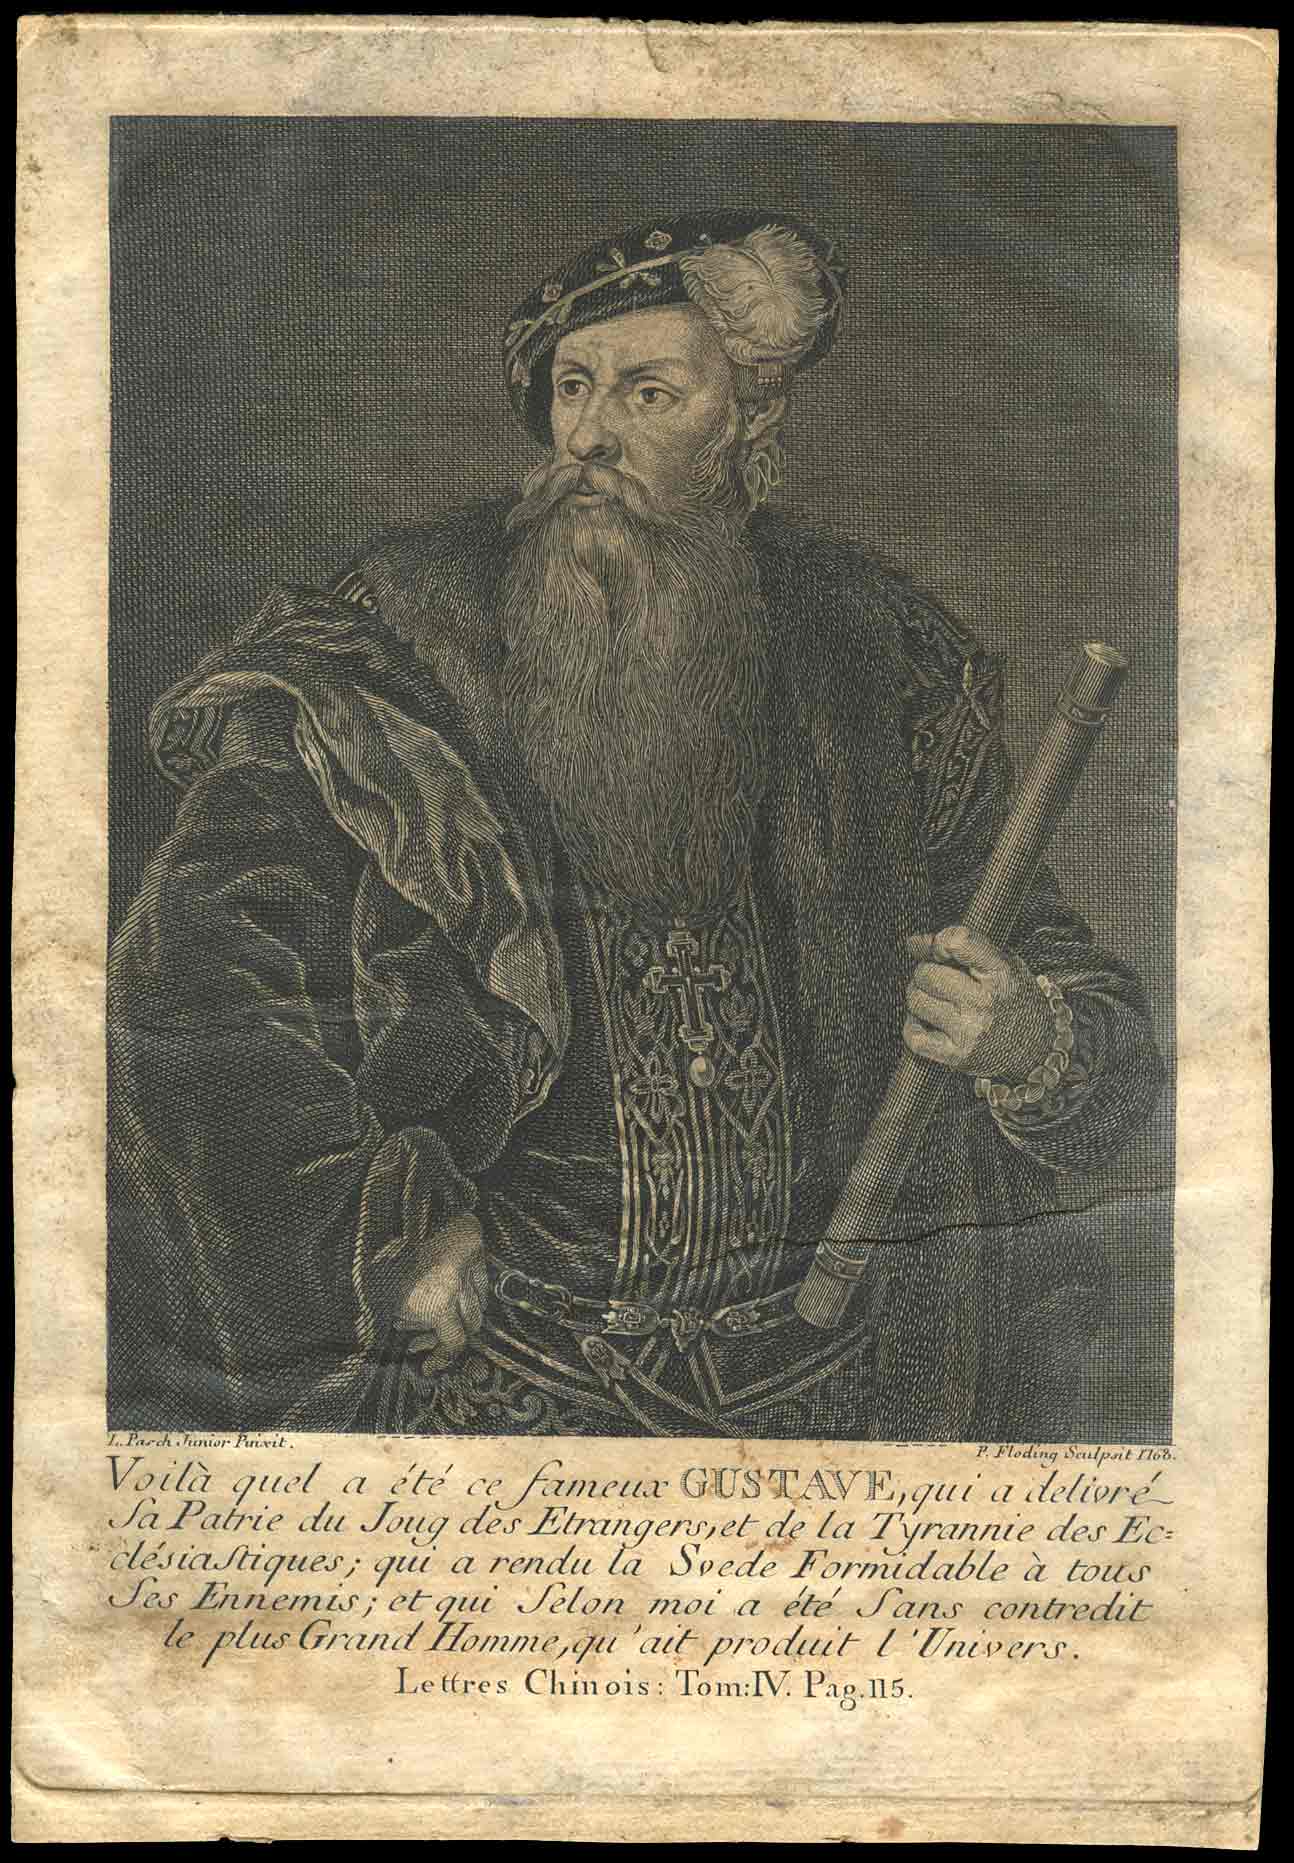 a portrait of a bearded man with a beard holding an arrow